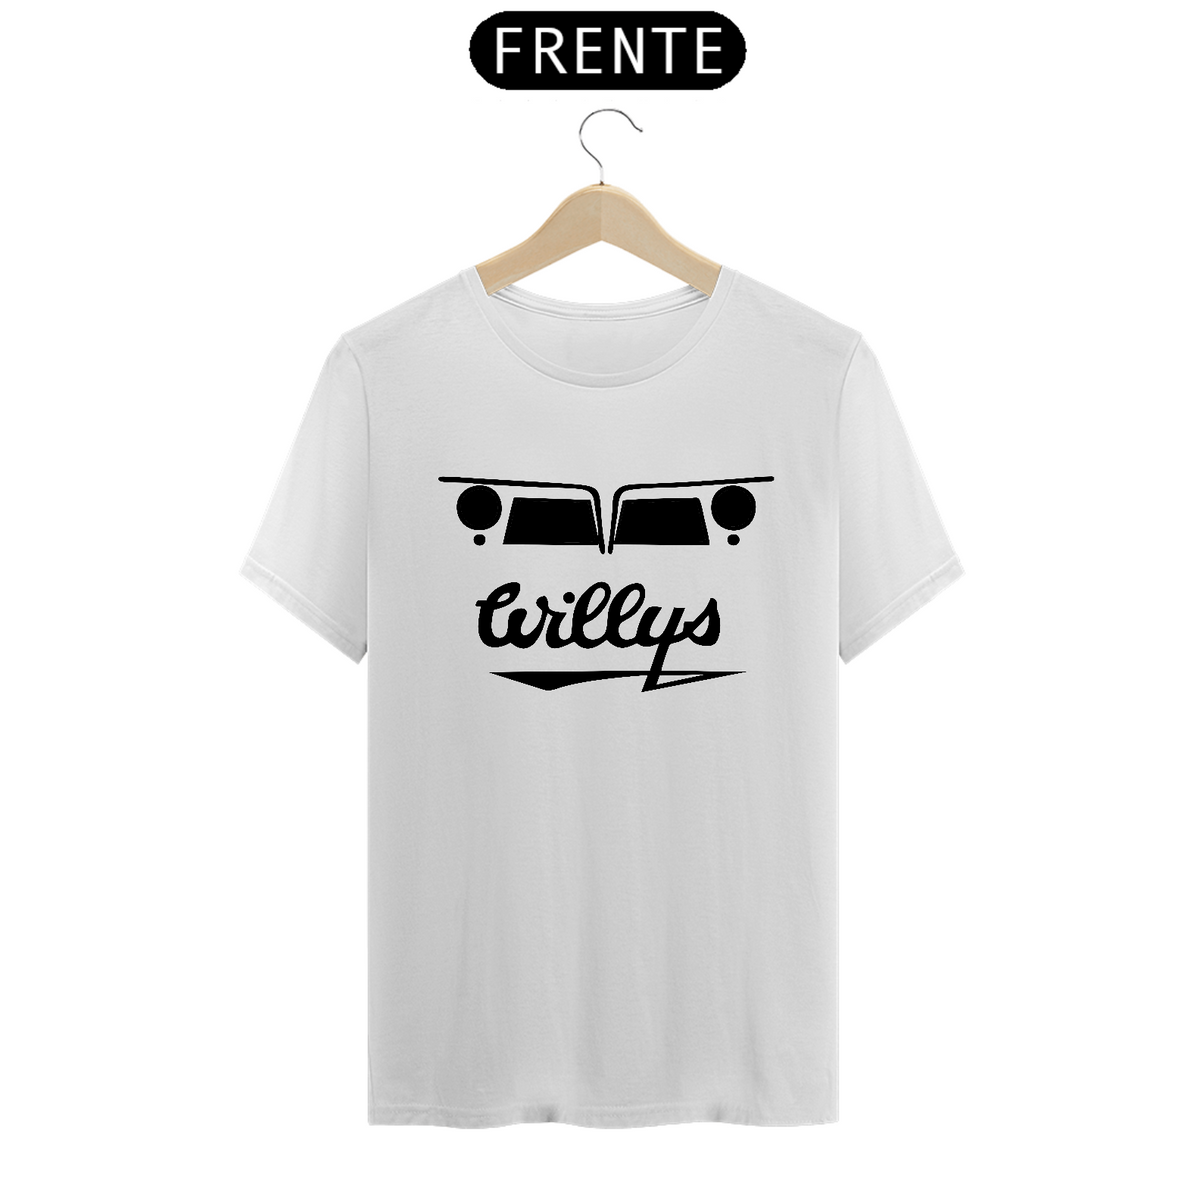 Nome do produto: T-shirt Prime - Frente Rural Preta